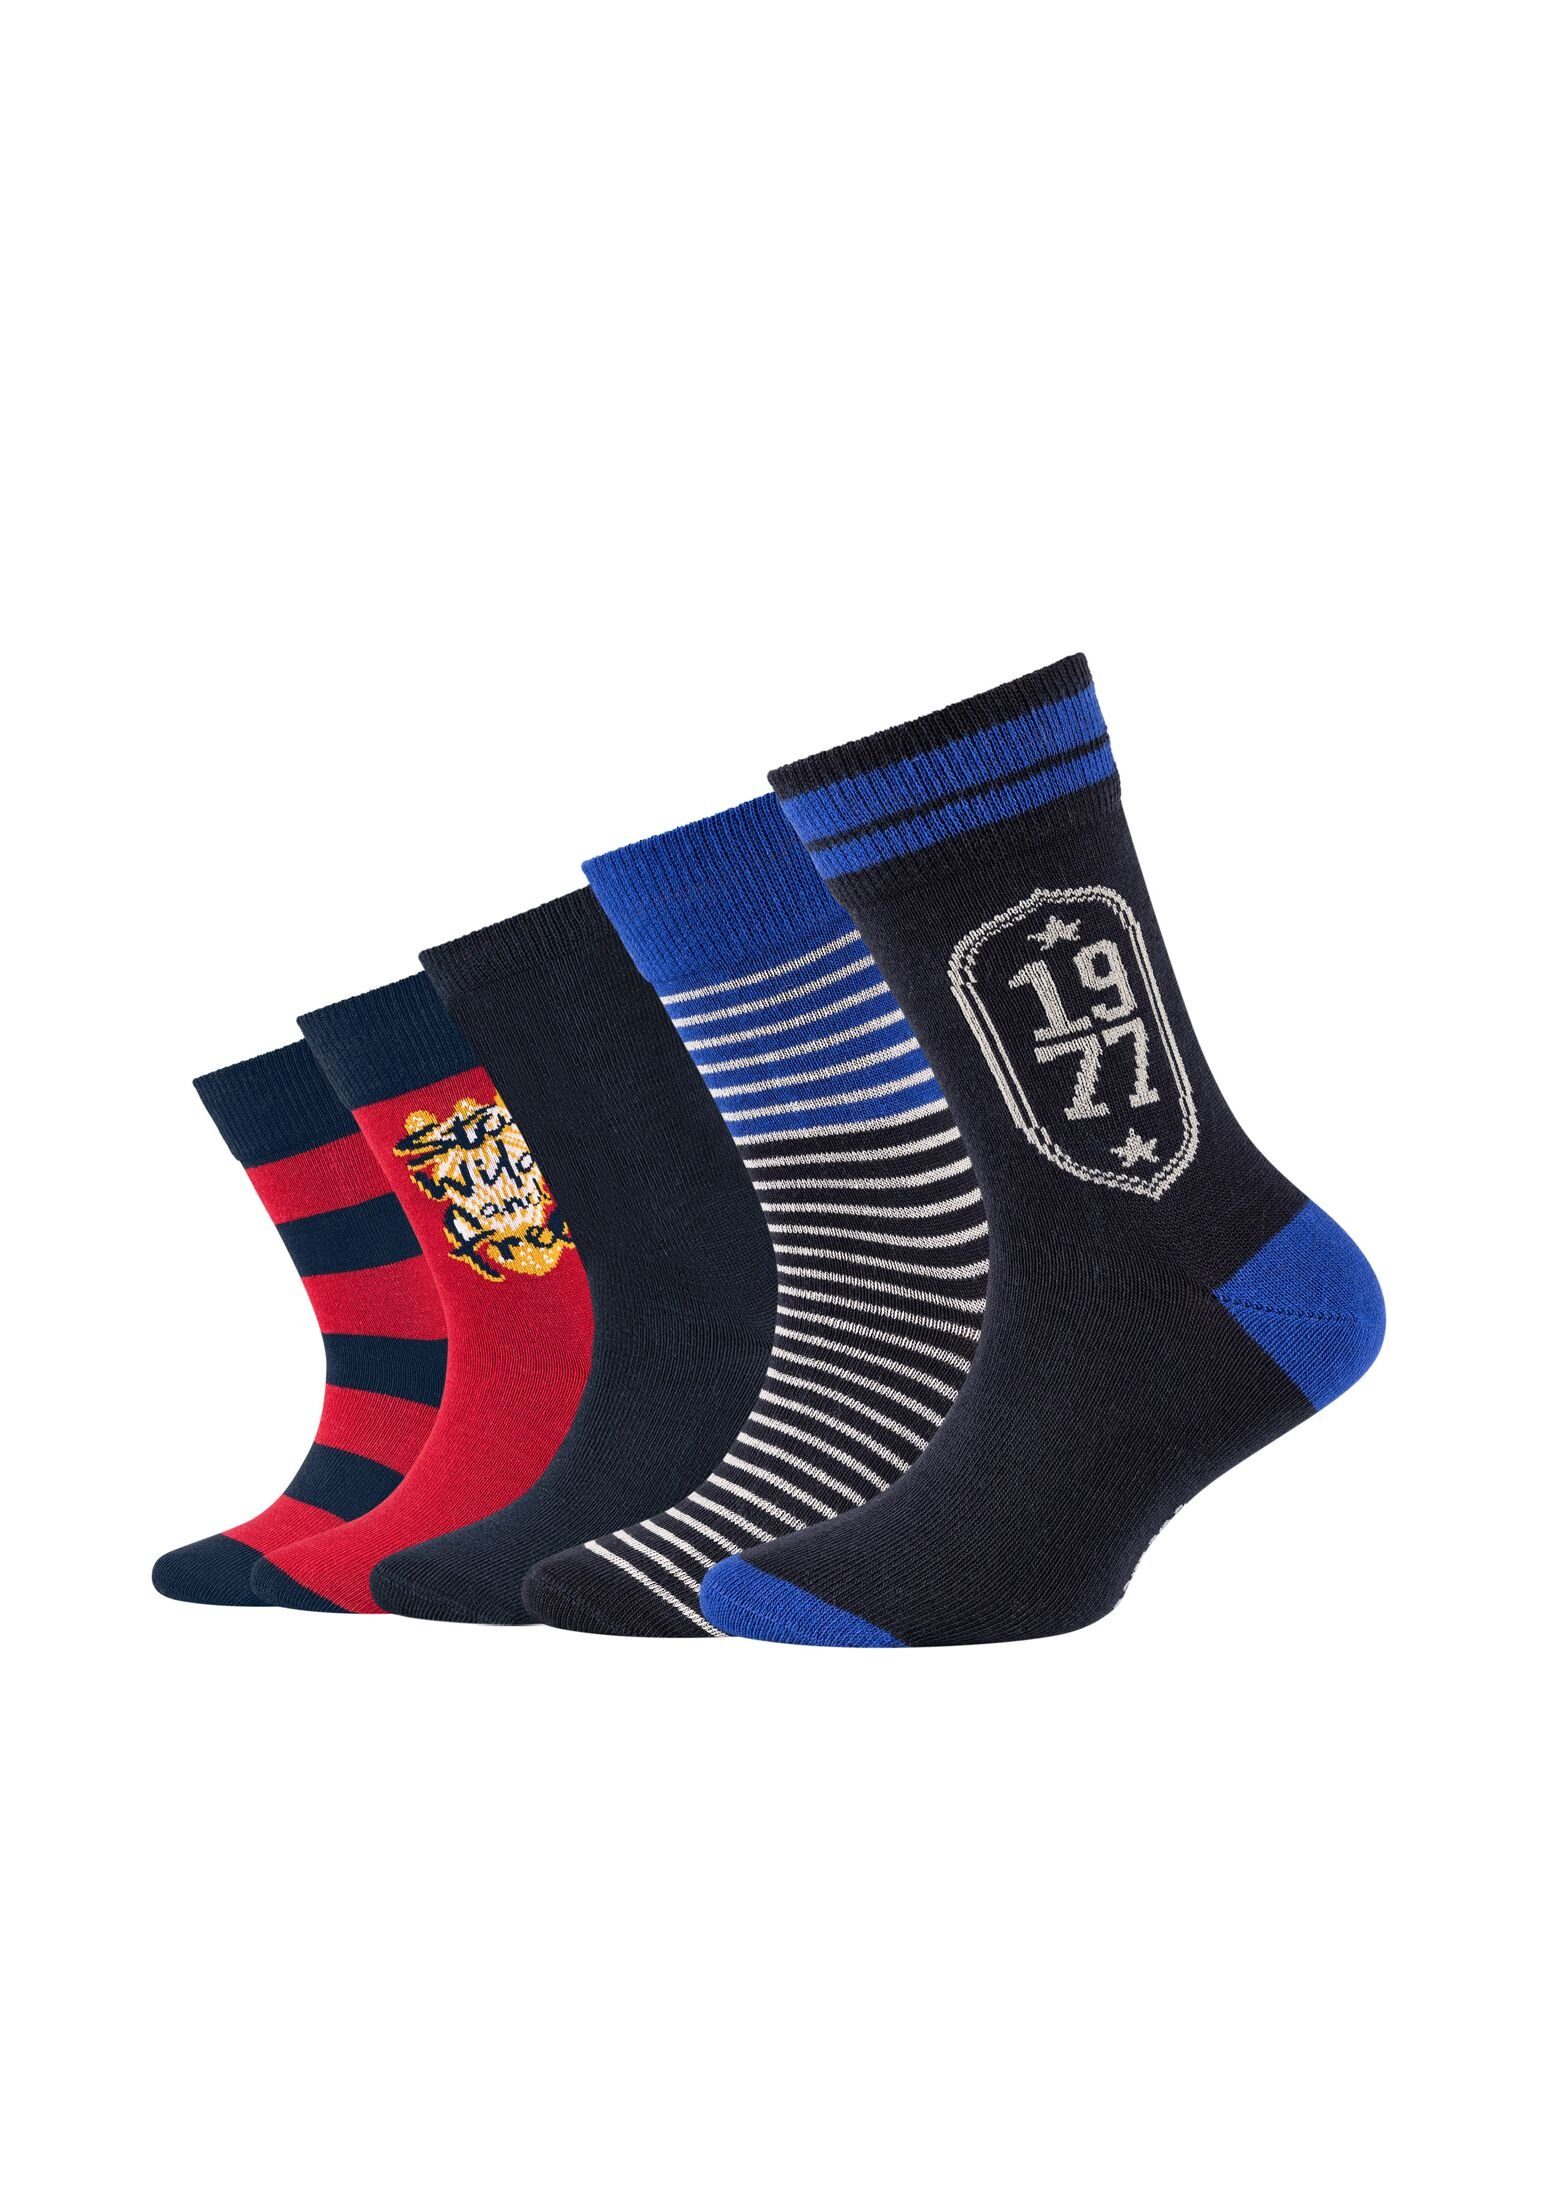 Einkaufstasche Camano Socken Socken 5er Pack navy